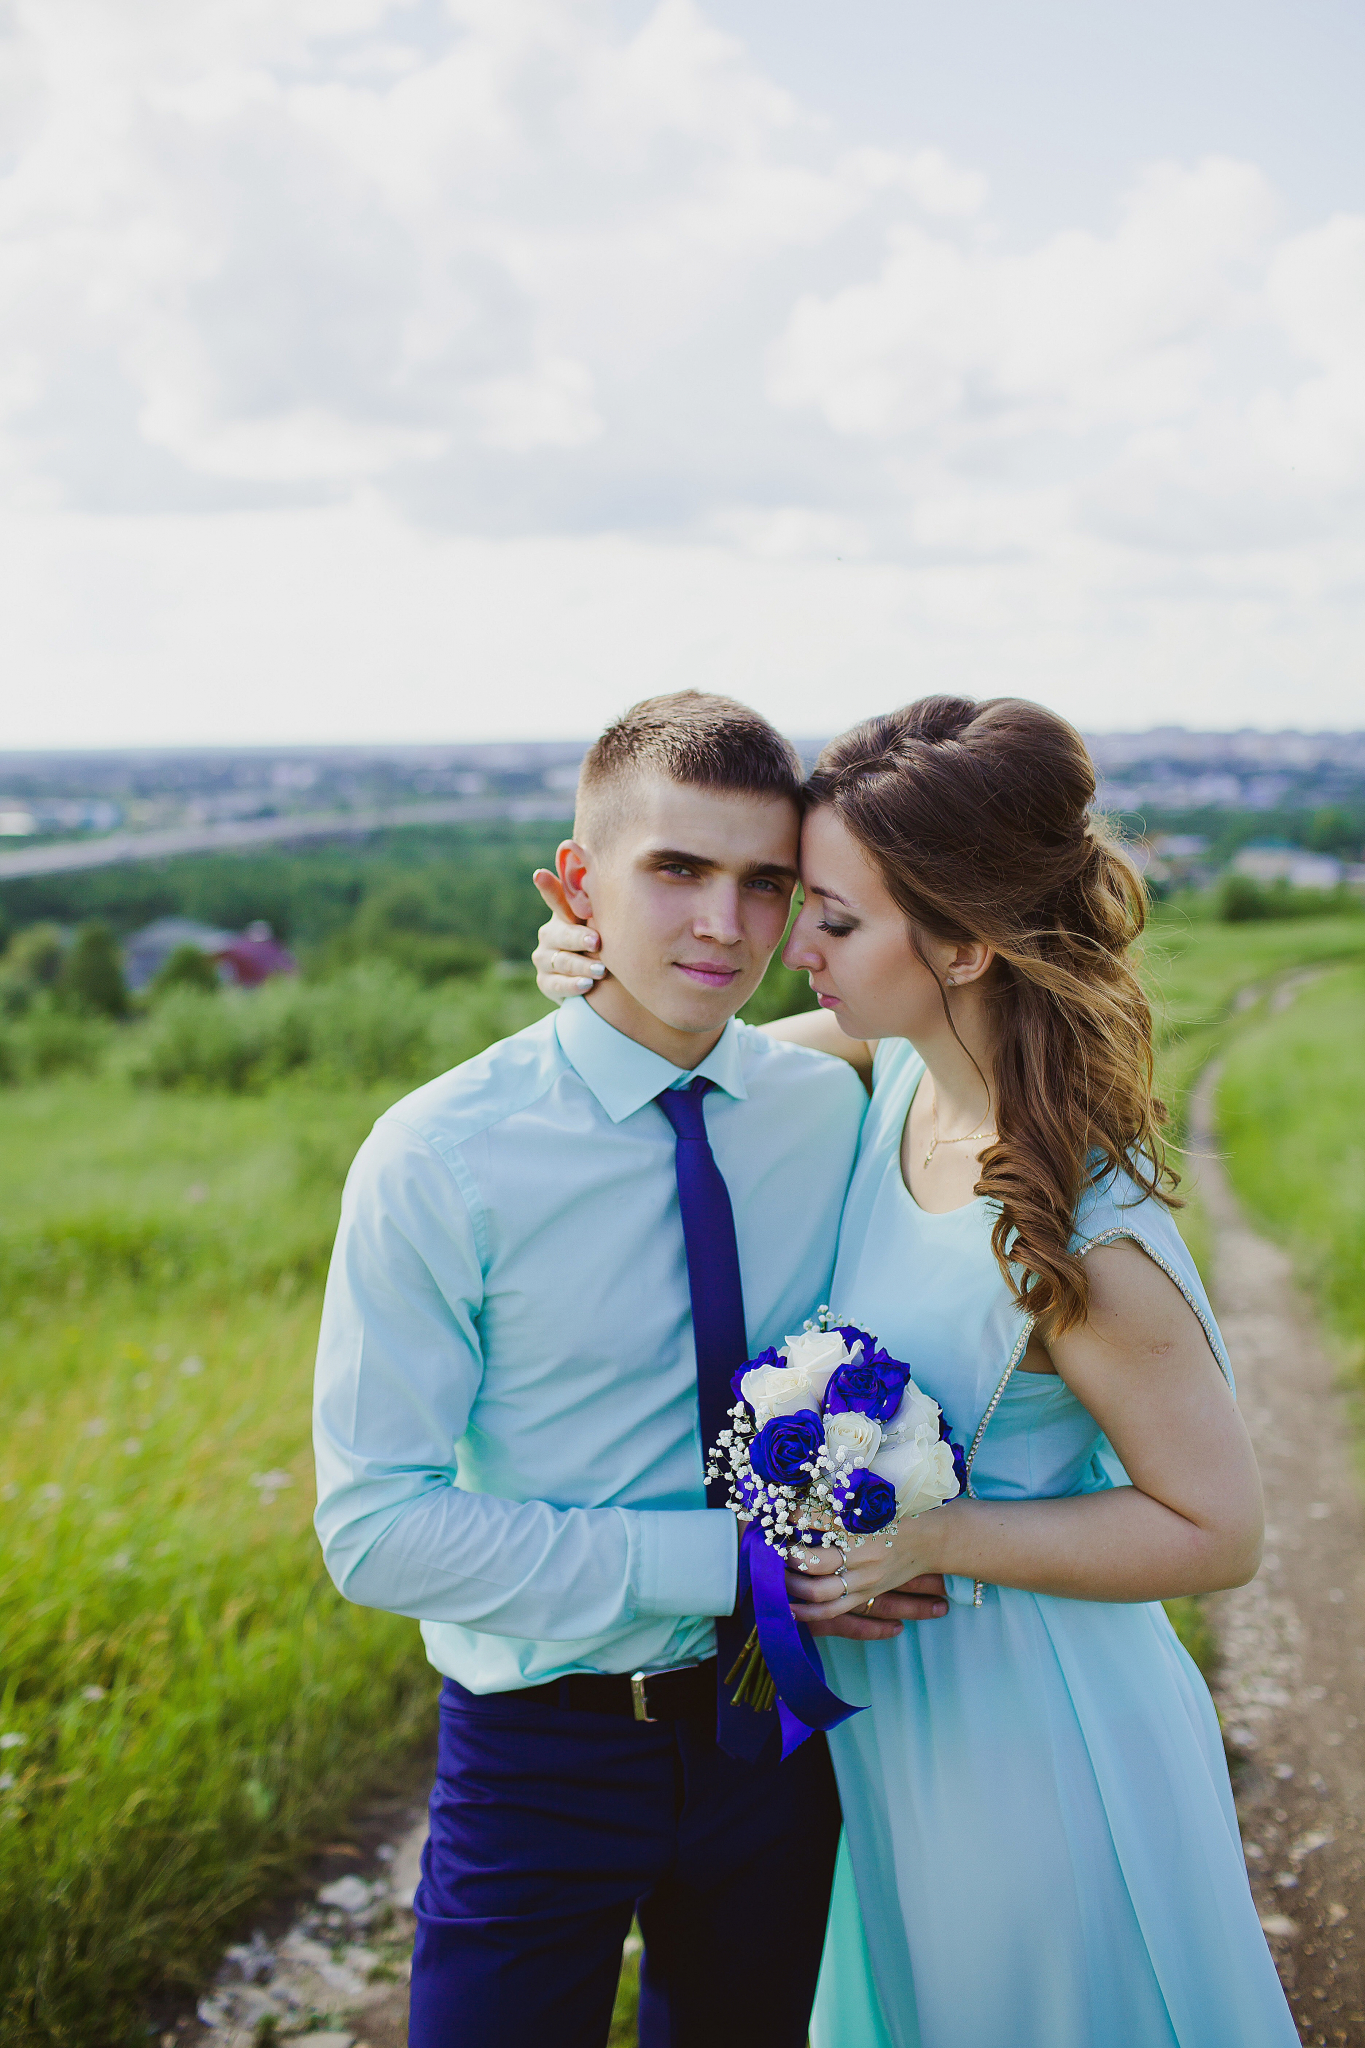 В фотоконкурсе «Самая красивая невеста» на портале PG11.ru появились прекрасные участницы